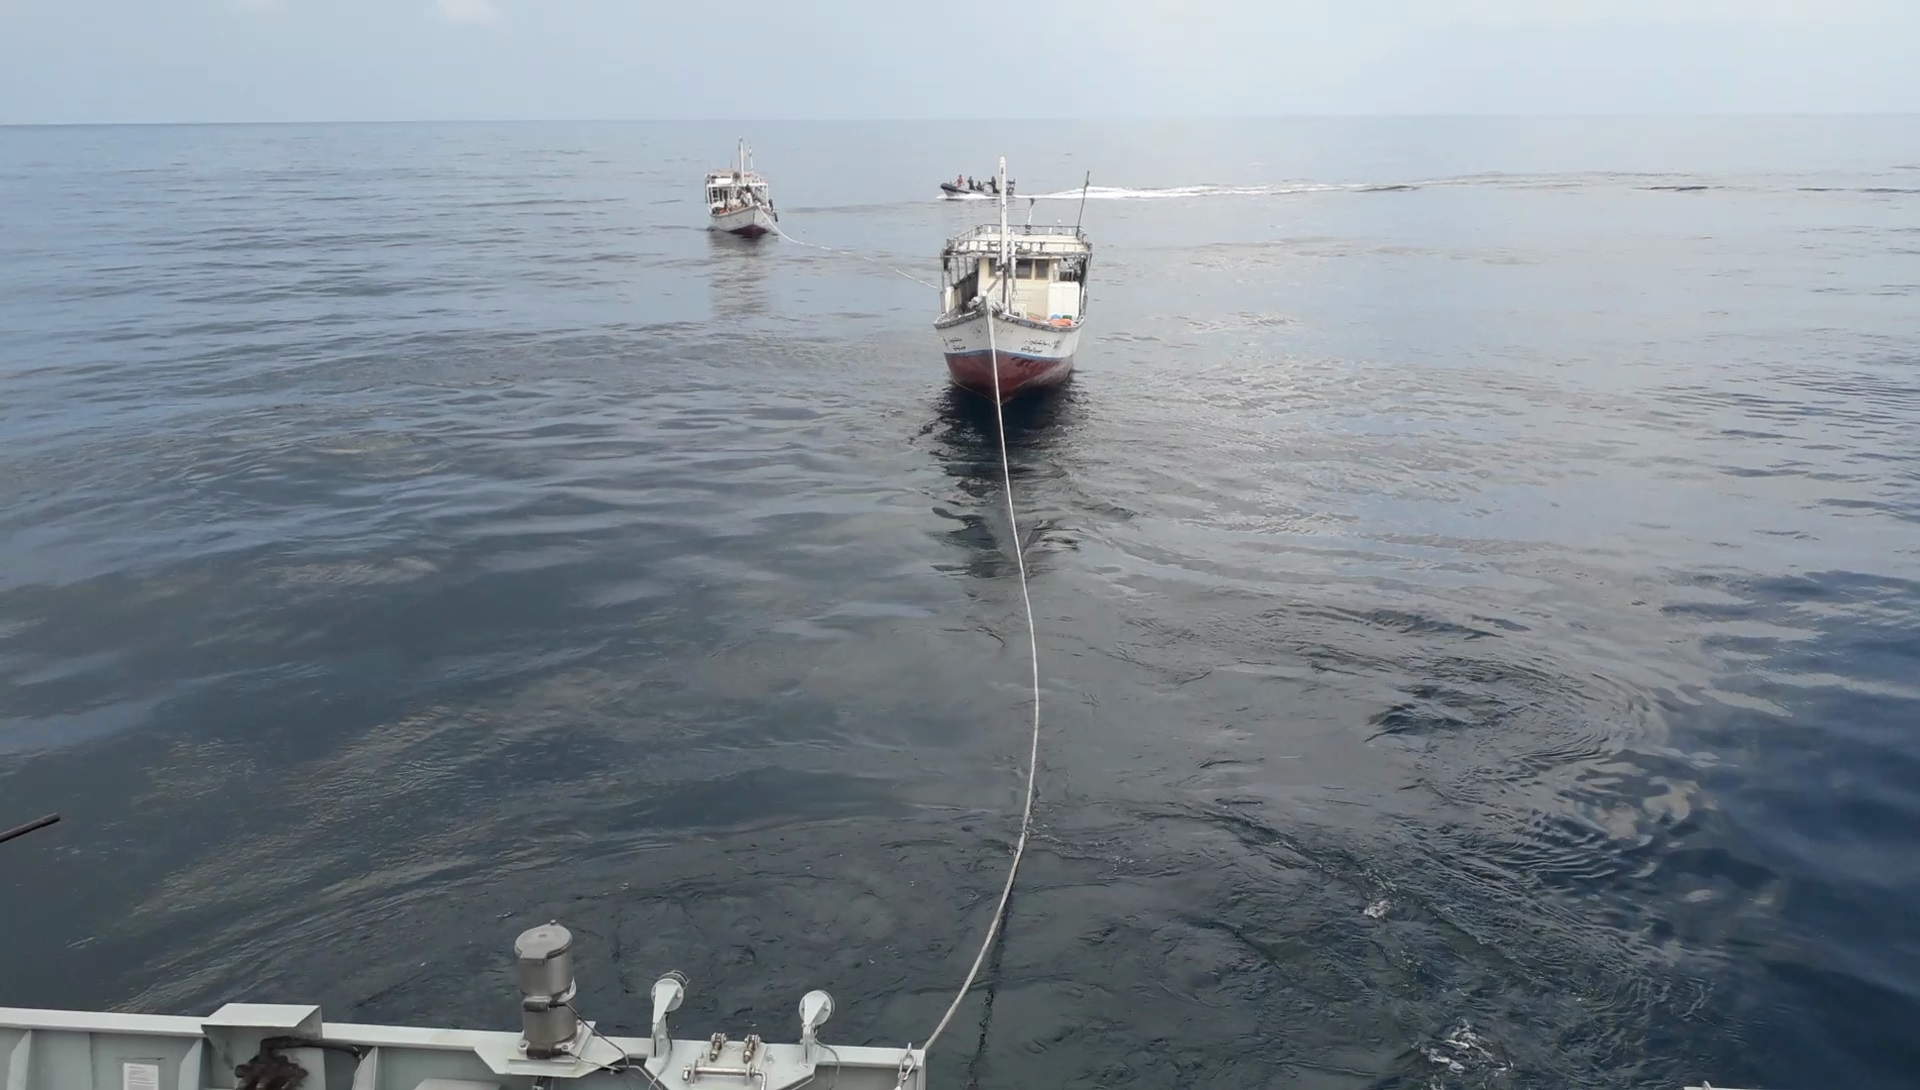 El buque “Relámpago” auxilia a embarcaciones a la deriva frente a la costa de Somalia y colabora con fuerzas de seguridad de la región.